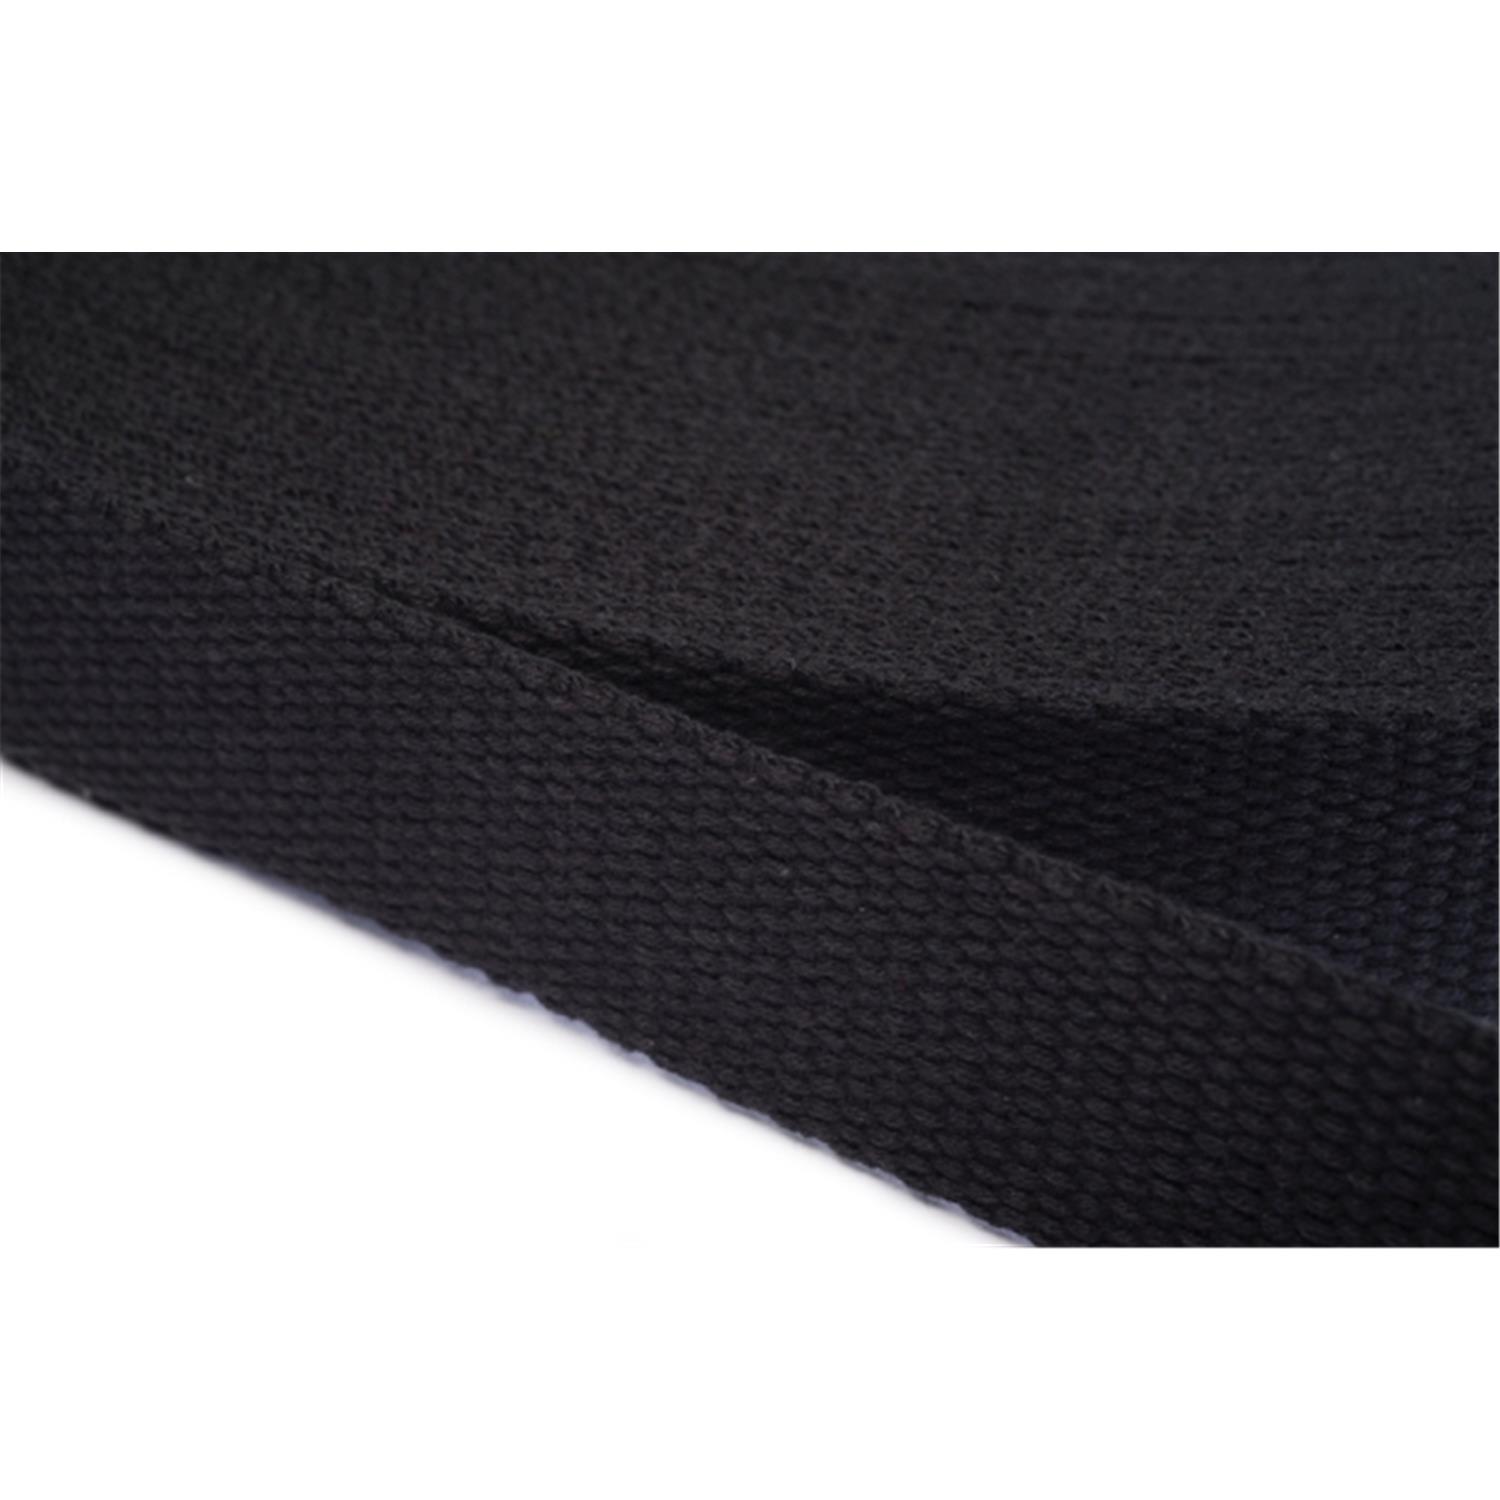 Gurtband aus Baumwolle 20mm in 20 Farben 20 - schwarz 6 Meter